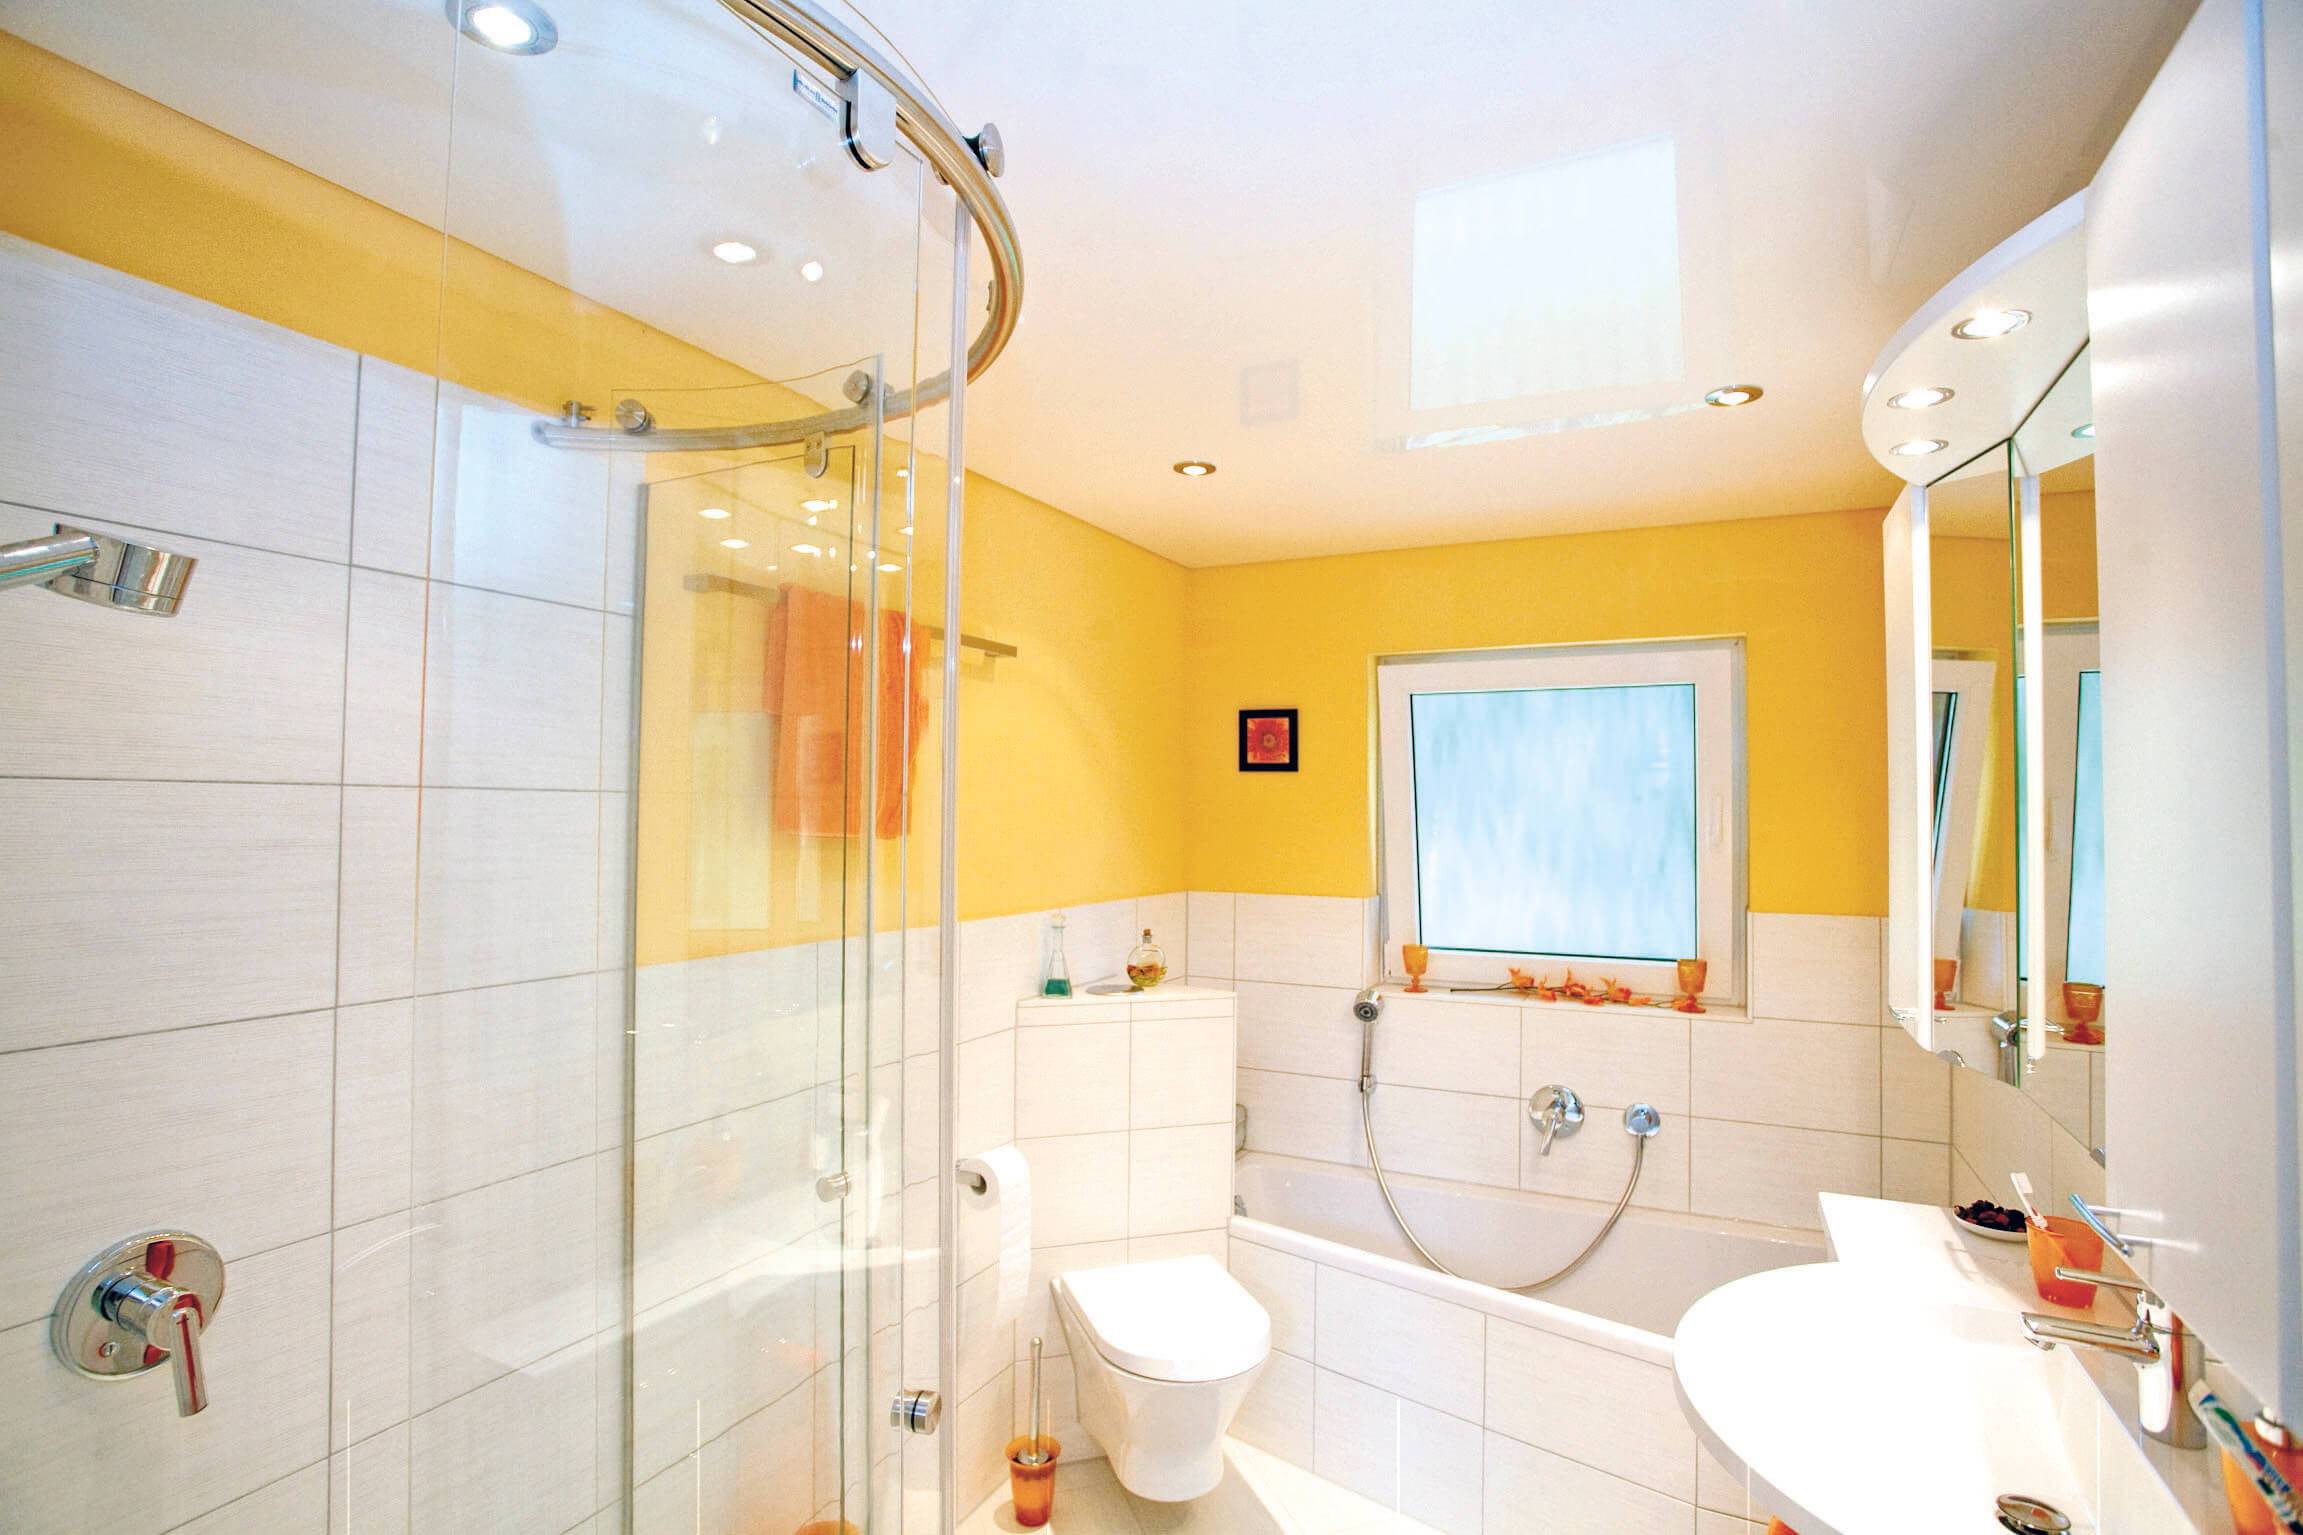 Из чего сделать потолок в ванной комнате: какой лучше выбрать материал, фото, видео